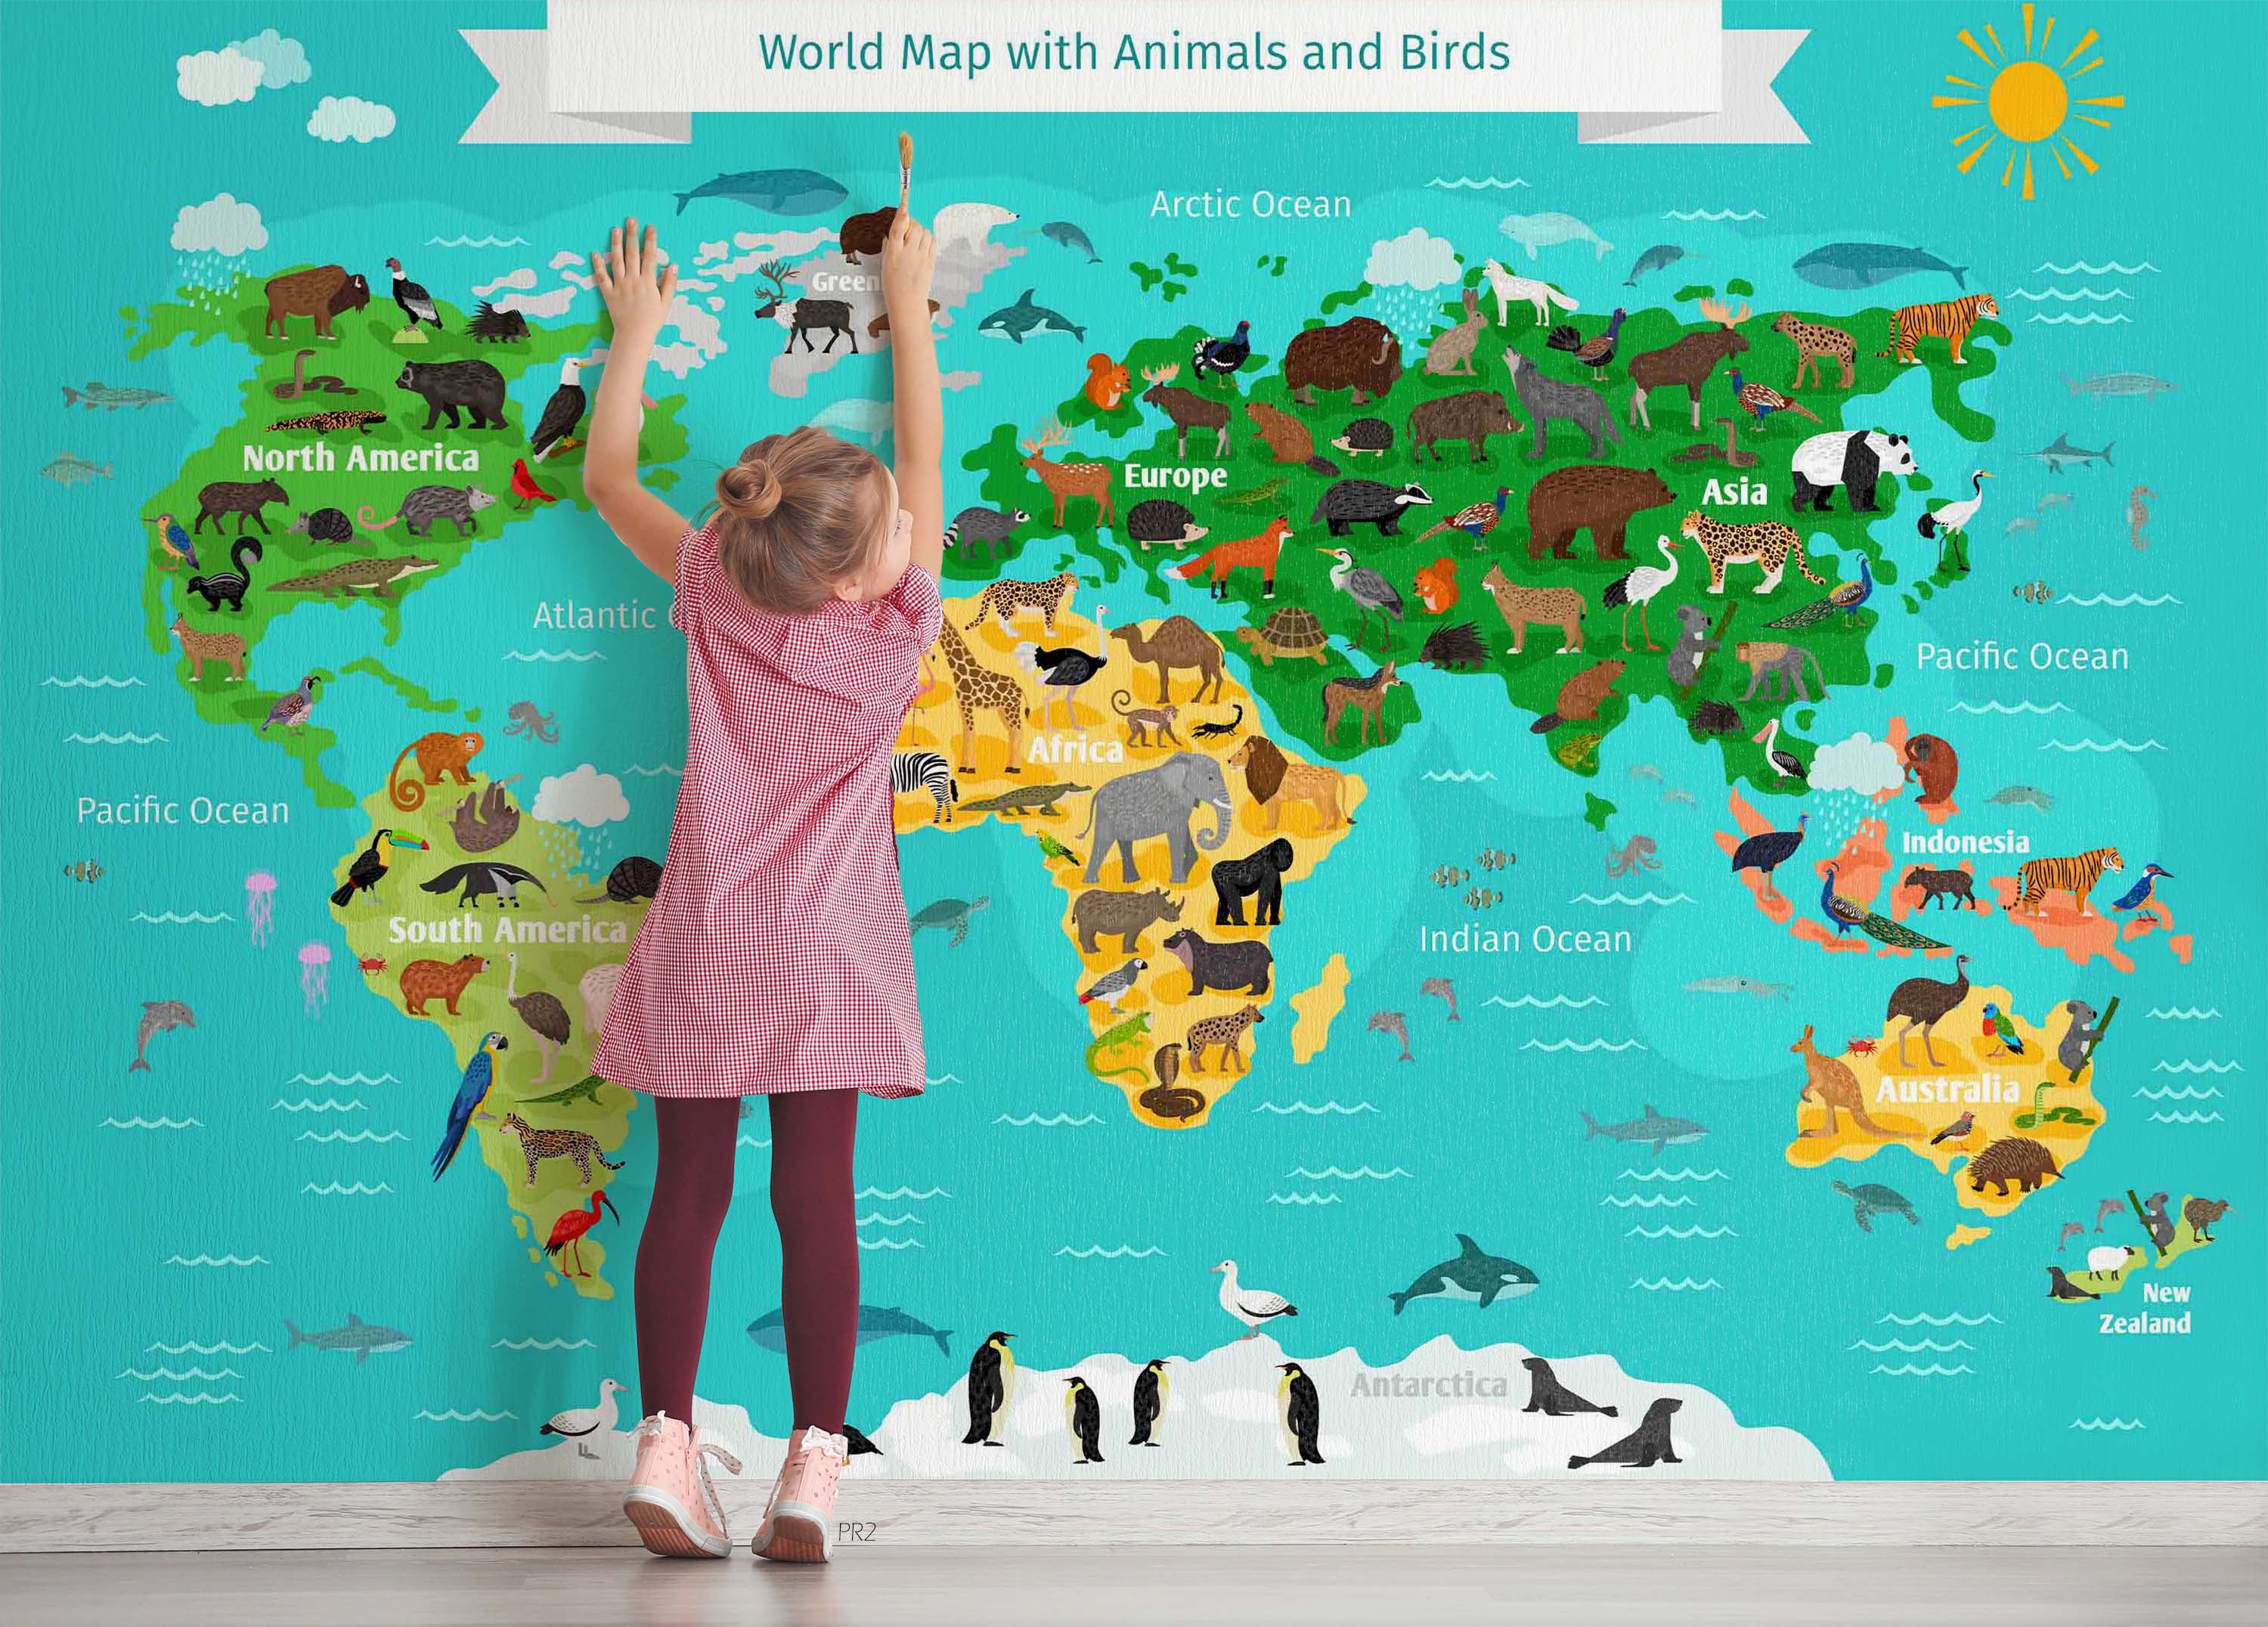 3D World Map Cartoon Animals Wall Mural Wallpaper GD 3765- Jess Art Decoration